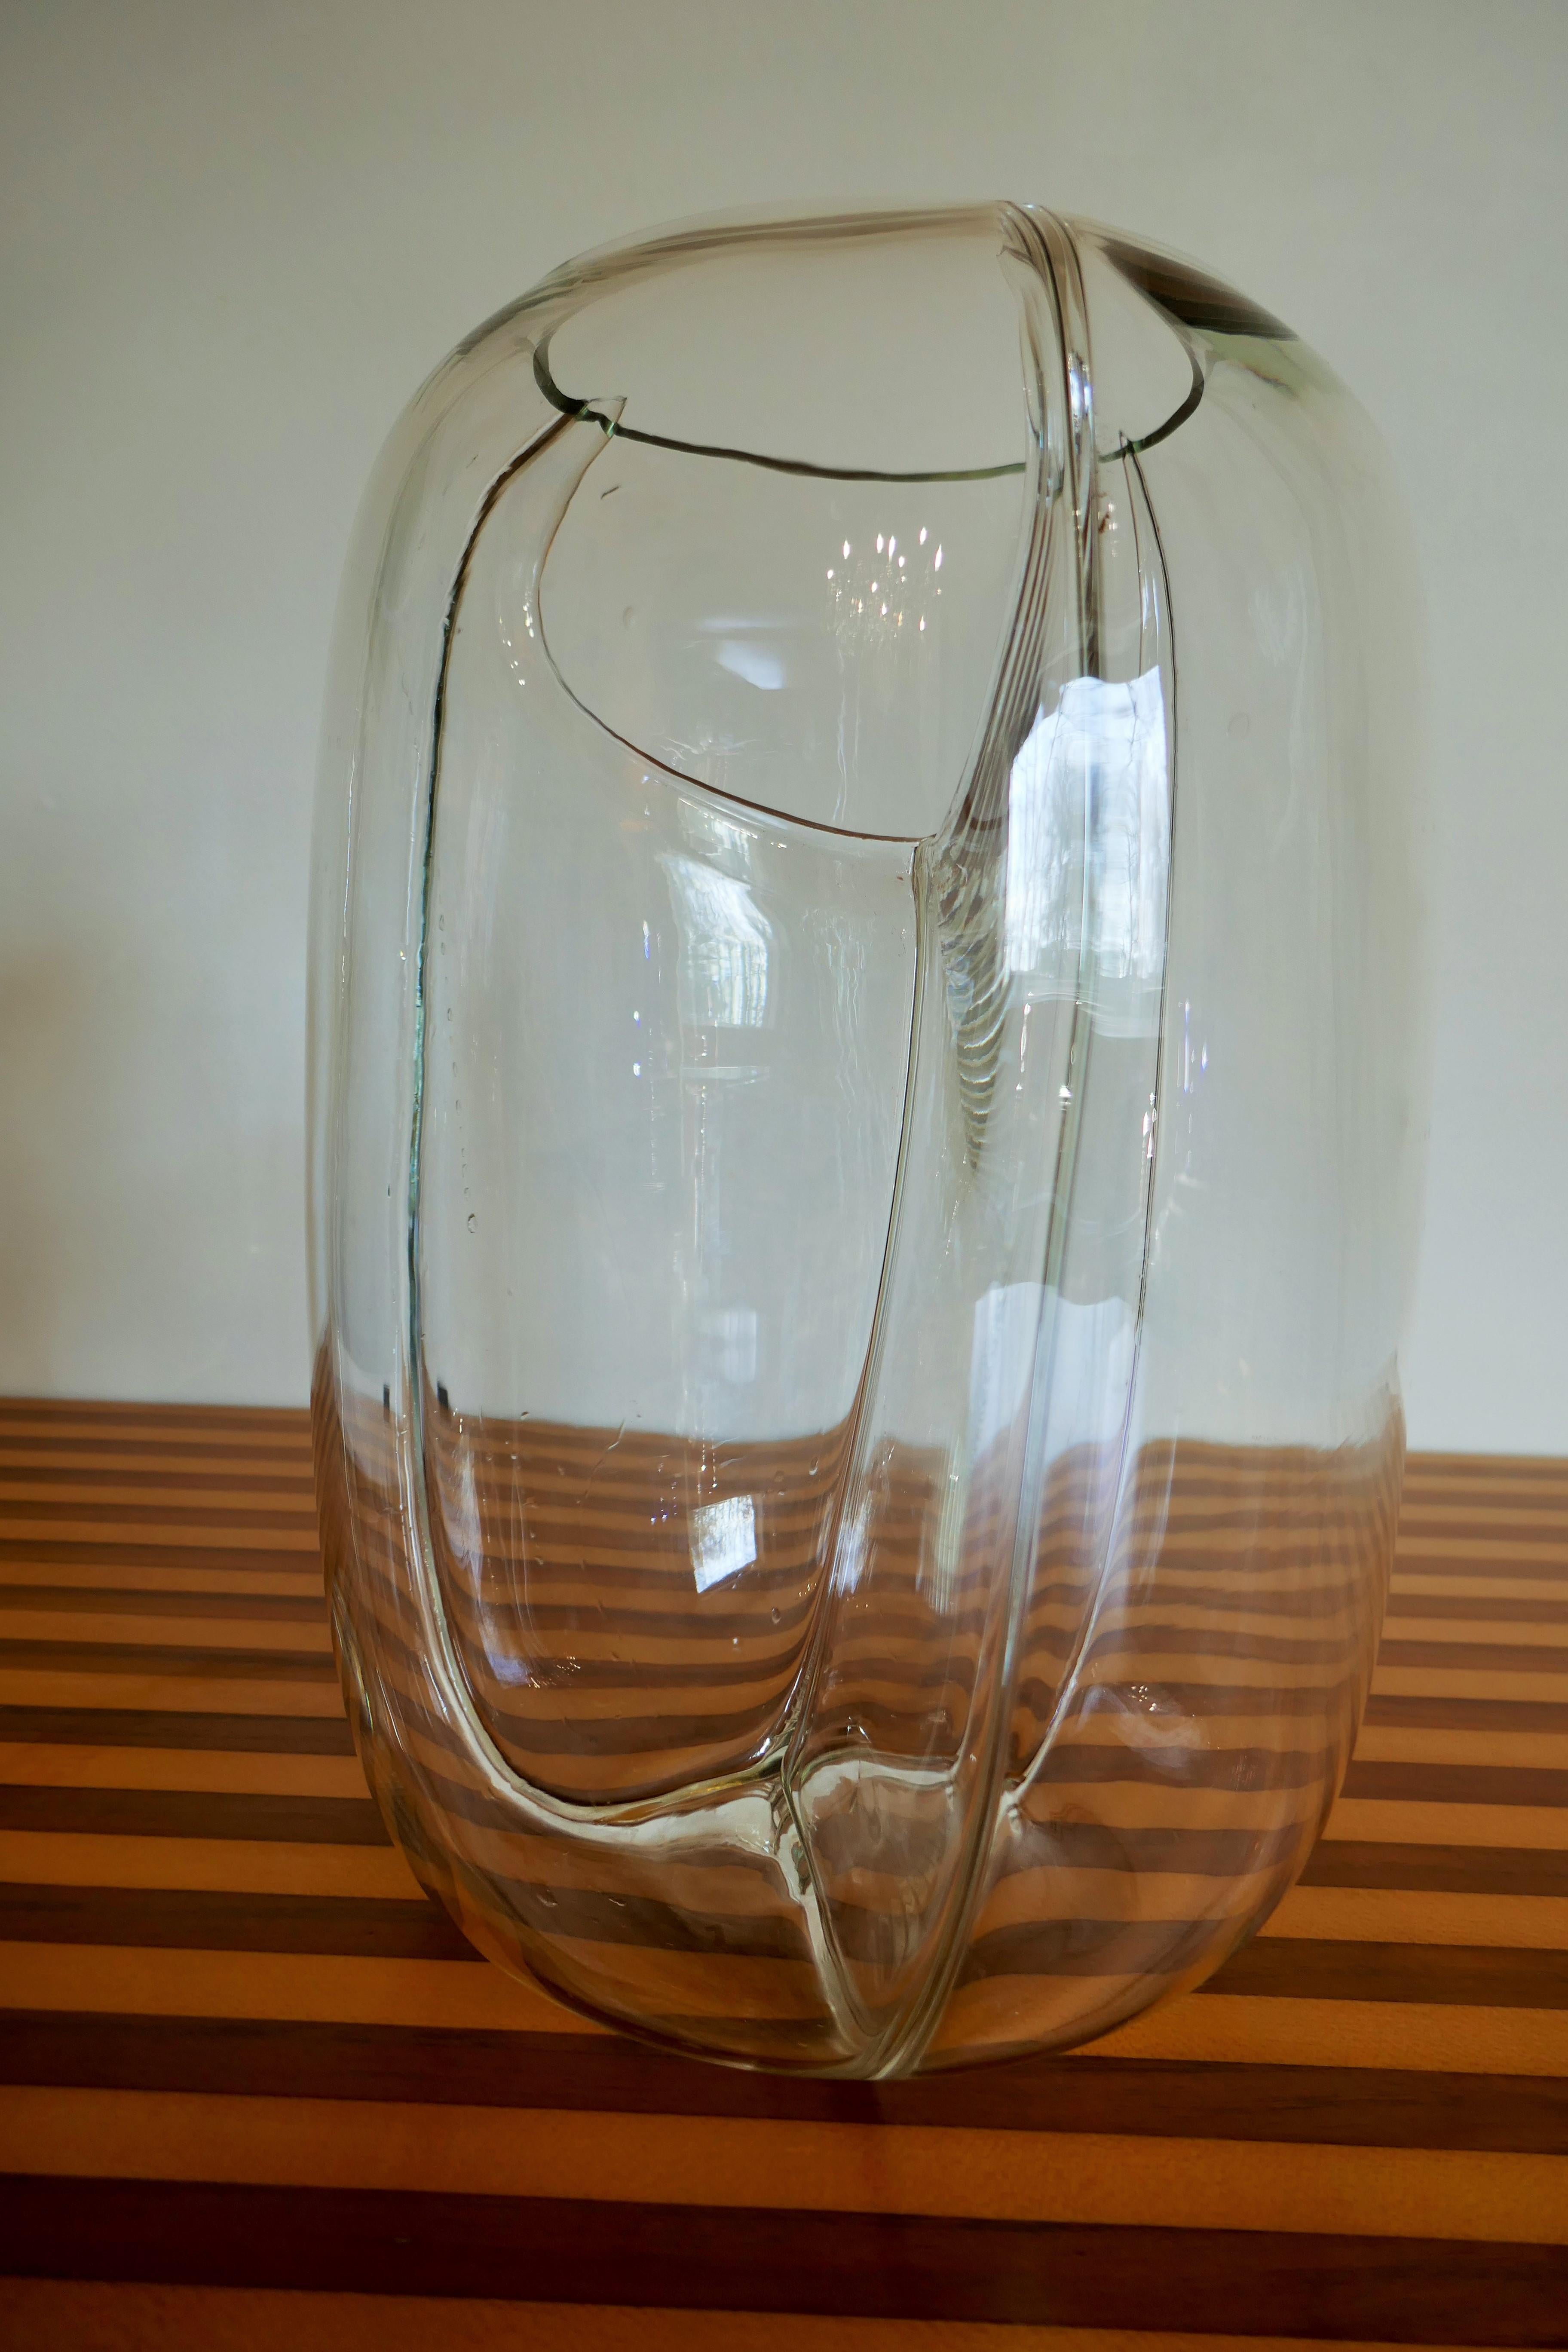 Membran-Vase von Toni Zuccheri für VeArt
Guter Zustand
Dankeschön